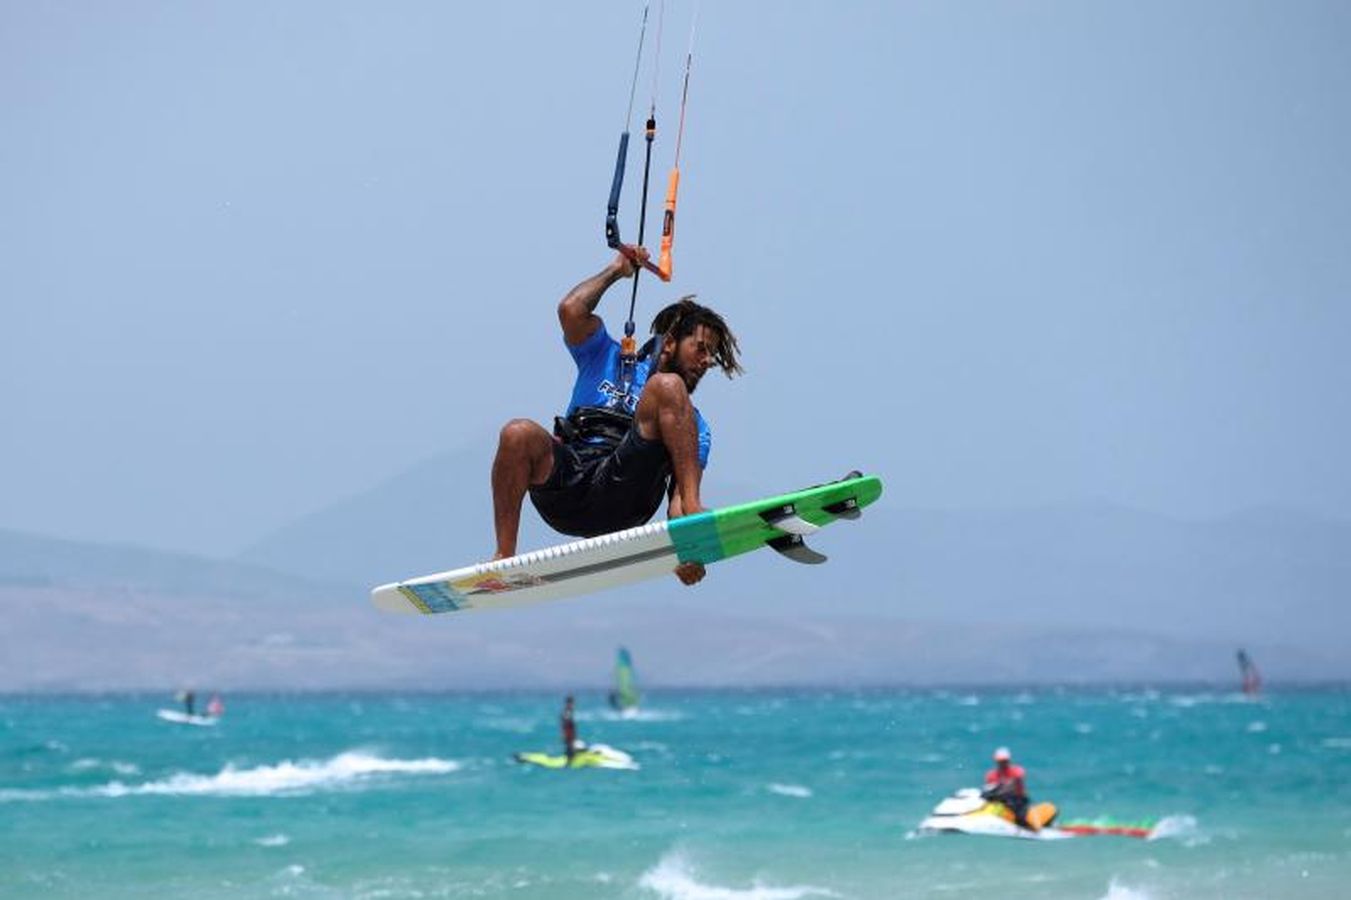 Este fin de semana se ha celebrado el campeonato del Mundo de windsurf y kitesurfing en las aguas de las playas de Jandía, en Fuerteventura.